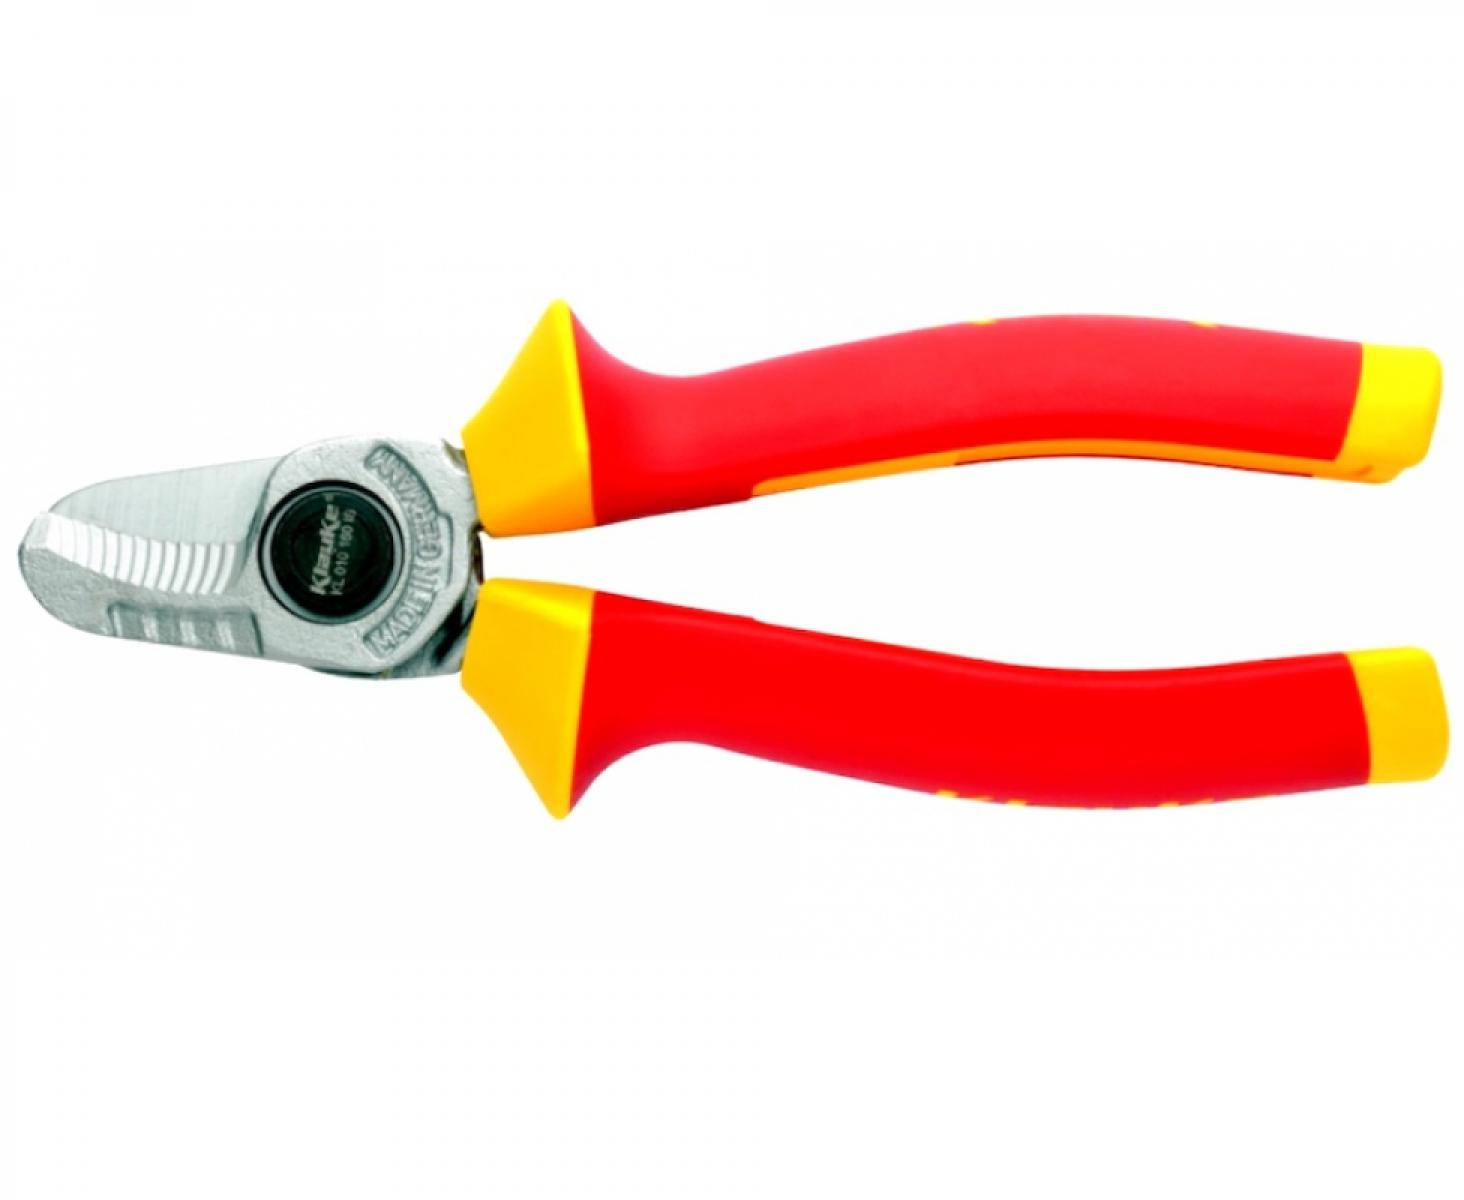 Ножницы VDE для медного и алюминиевого кабеля NYM и NYY Ø 25 мм сечением 70 мм² Klauke KLKKL010210IS